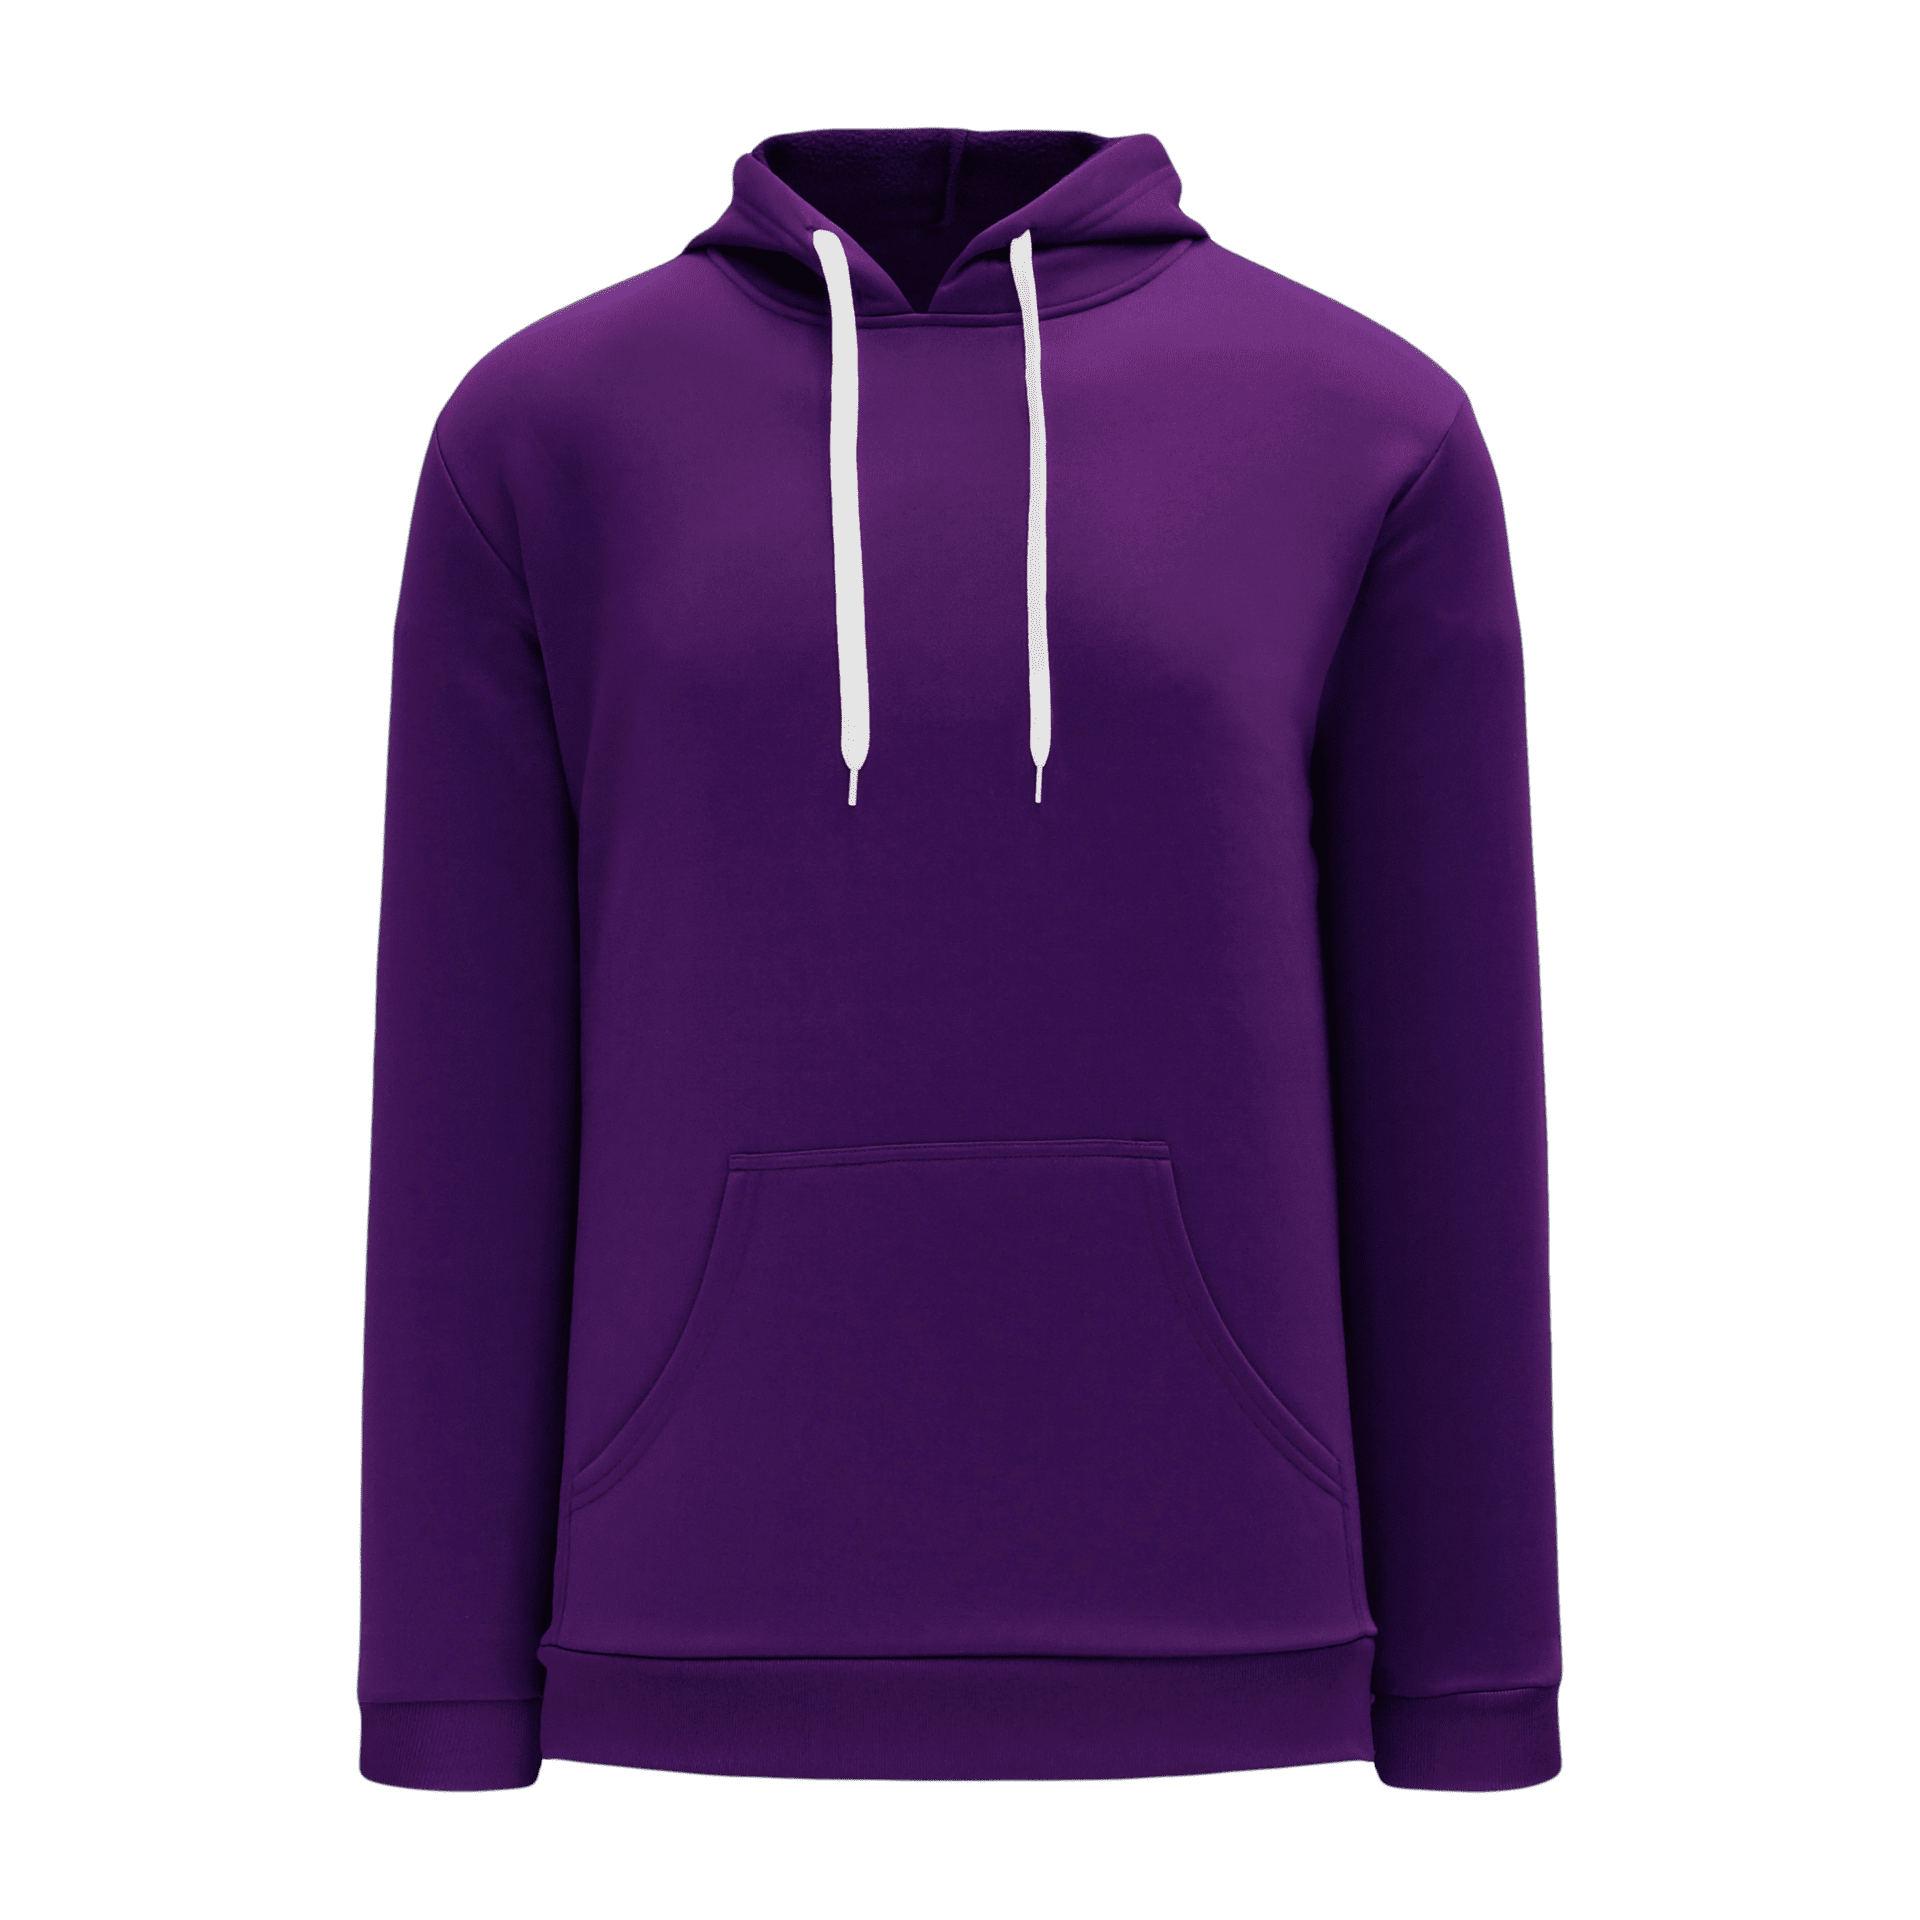 ATHLETIC KNIT Polyfleece Hooded Sweatshirt #A1835 Purple